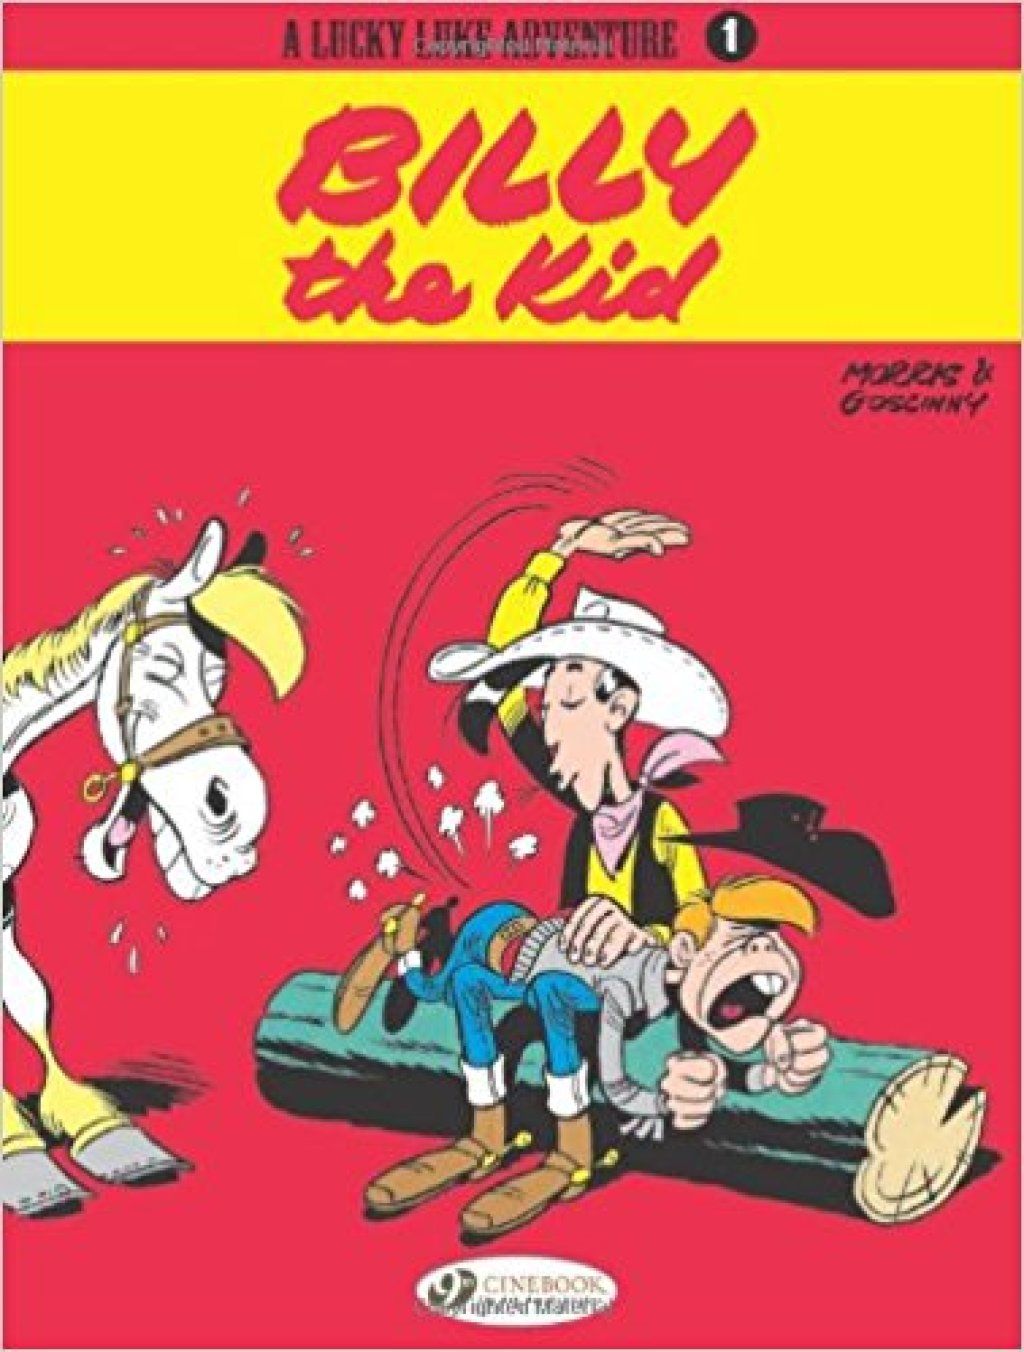 หนังสือการ์ตูนขายดีของ Lucky Luke การ์ตูนที่ดีที่สุดตลอดกาล